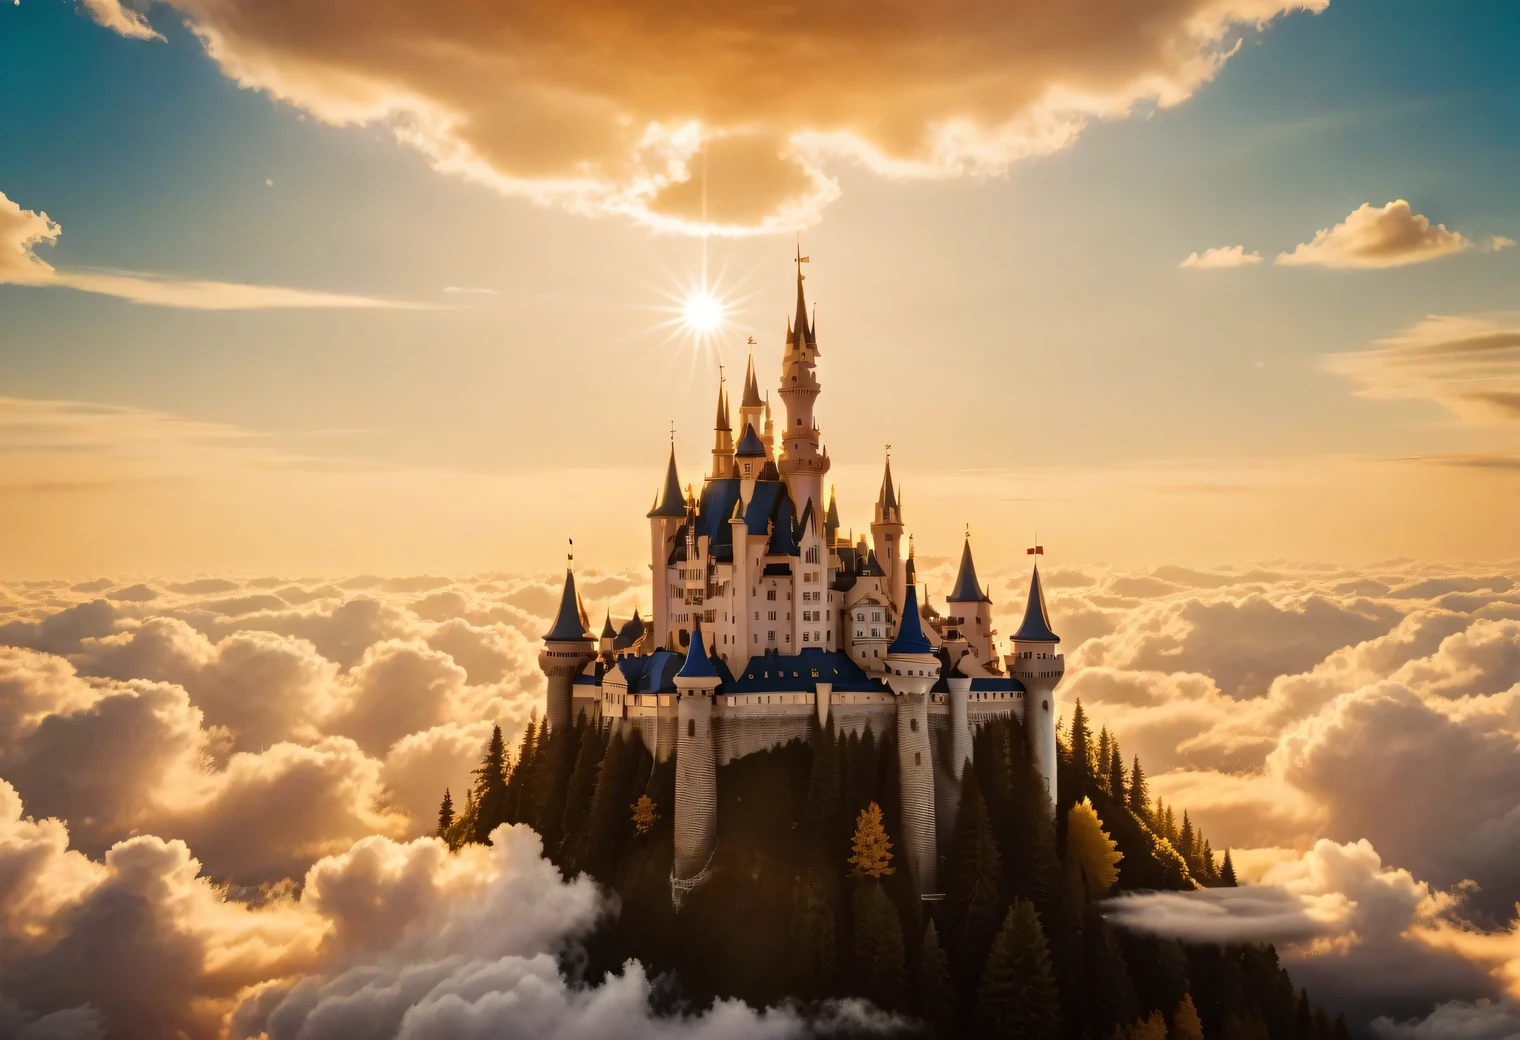 模拟摄影, 天空云层间有一座闪亮的梦幻城堡, 梦幻城堡非常美丽精致，周围云朵环绕，金色光芒和金色光芒, 金色光芒从梦幻城堡中散发出来, 实际的, 详细的, 高分辨率, 32K,模拟照片